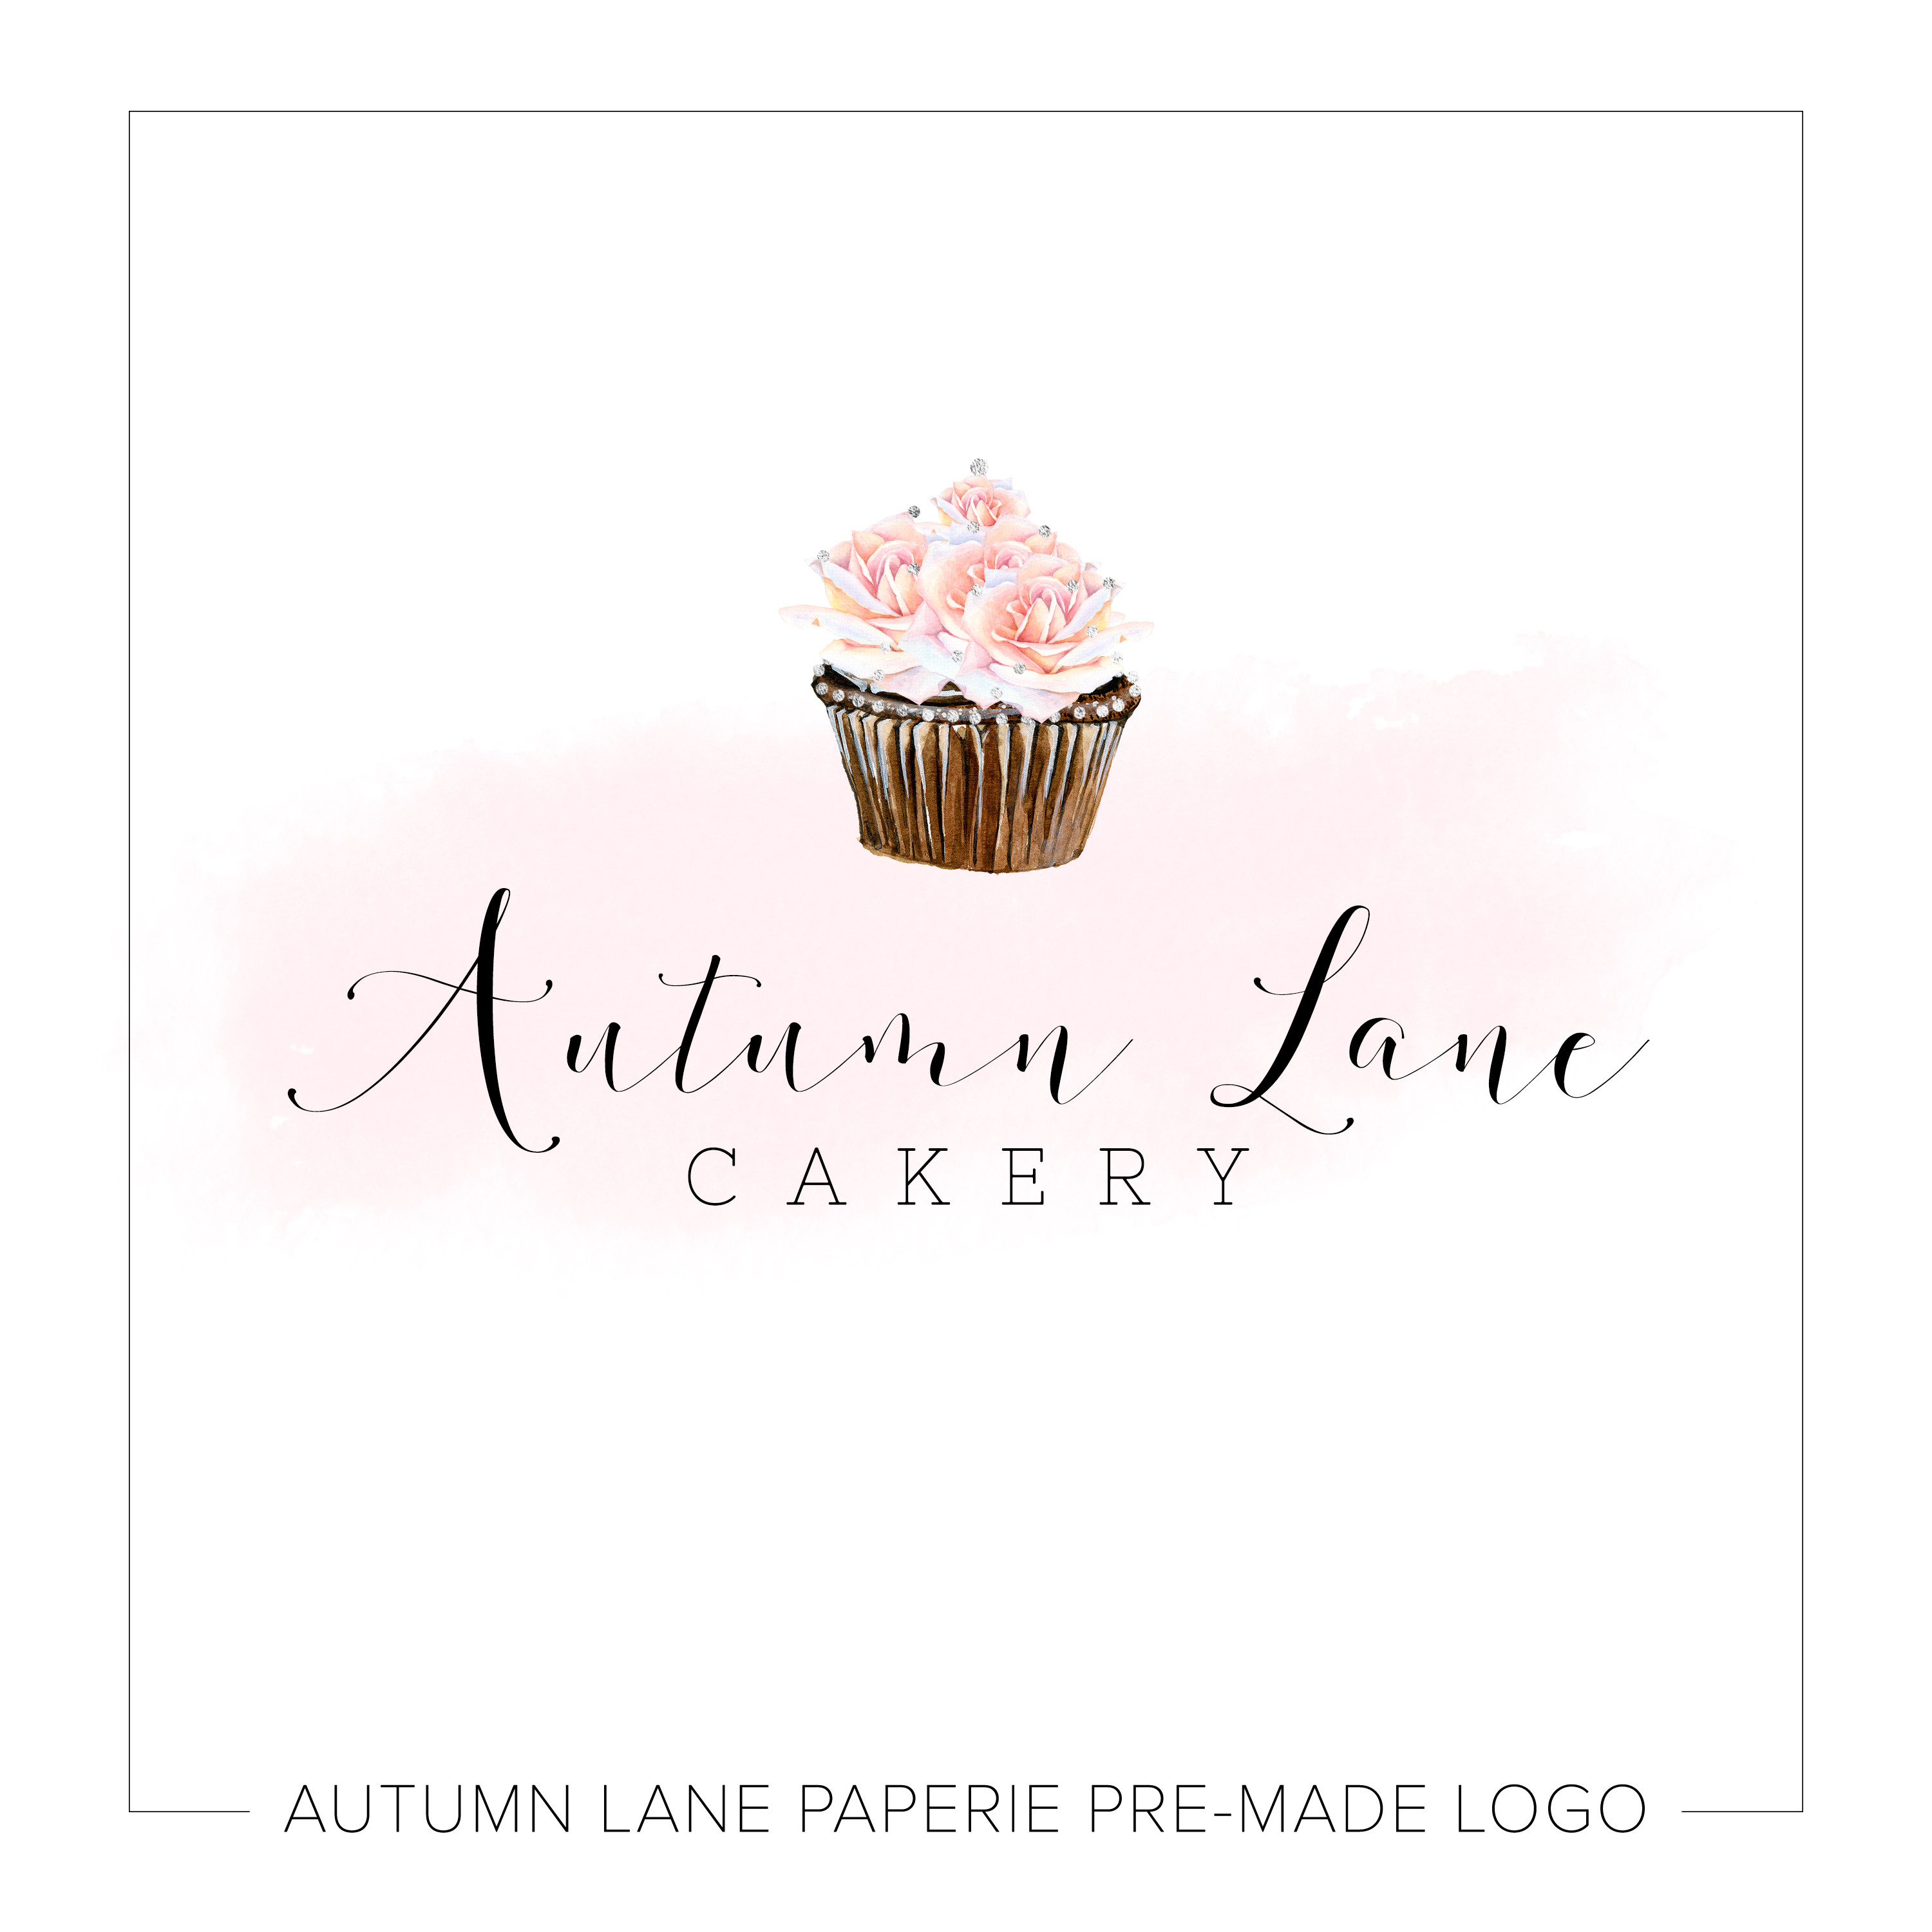 Cupcake Shop Logos Of Cupcake Business Card Template